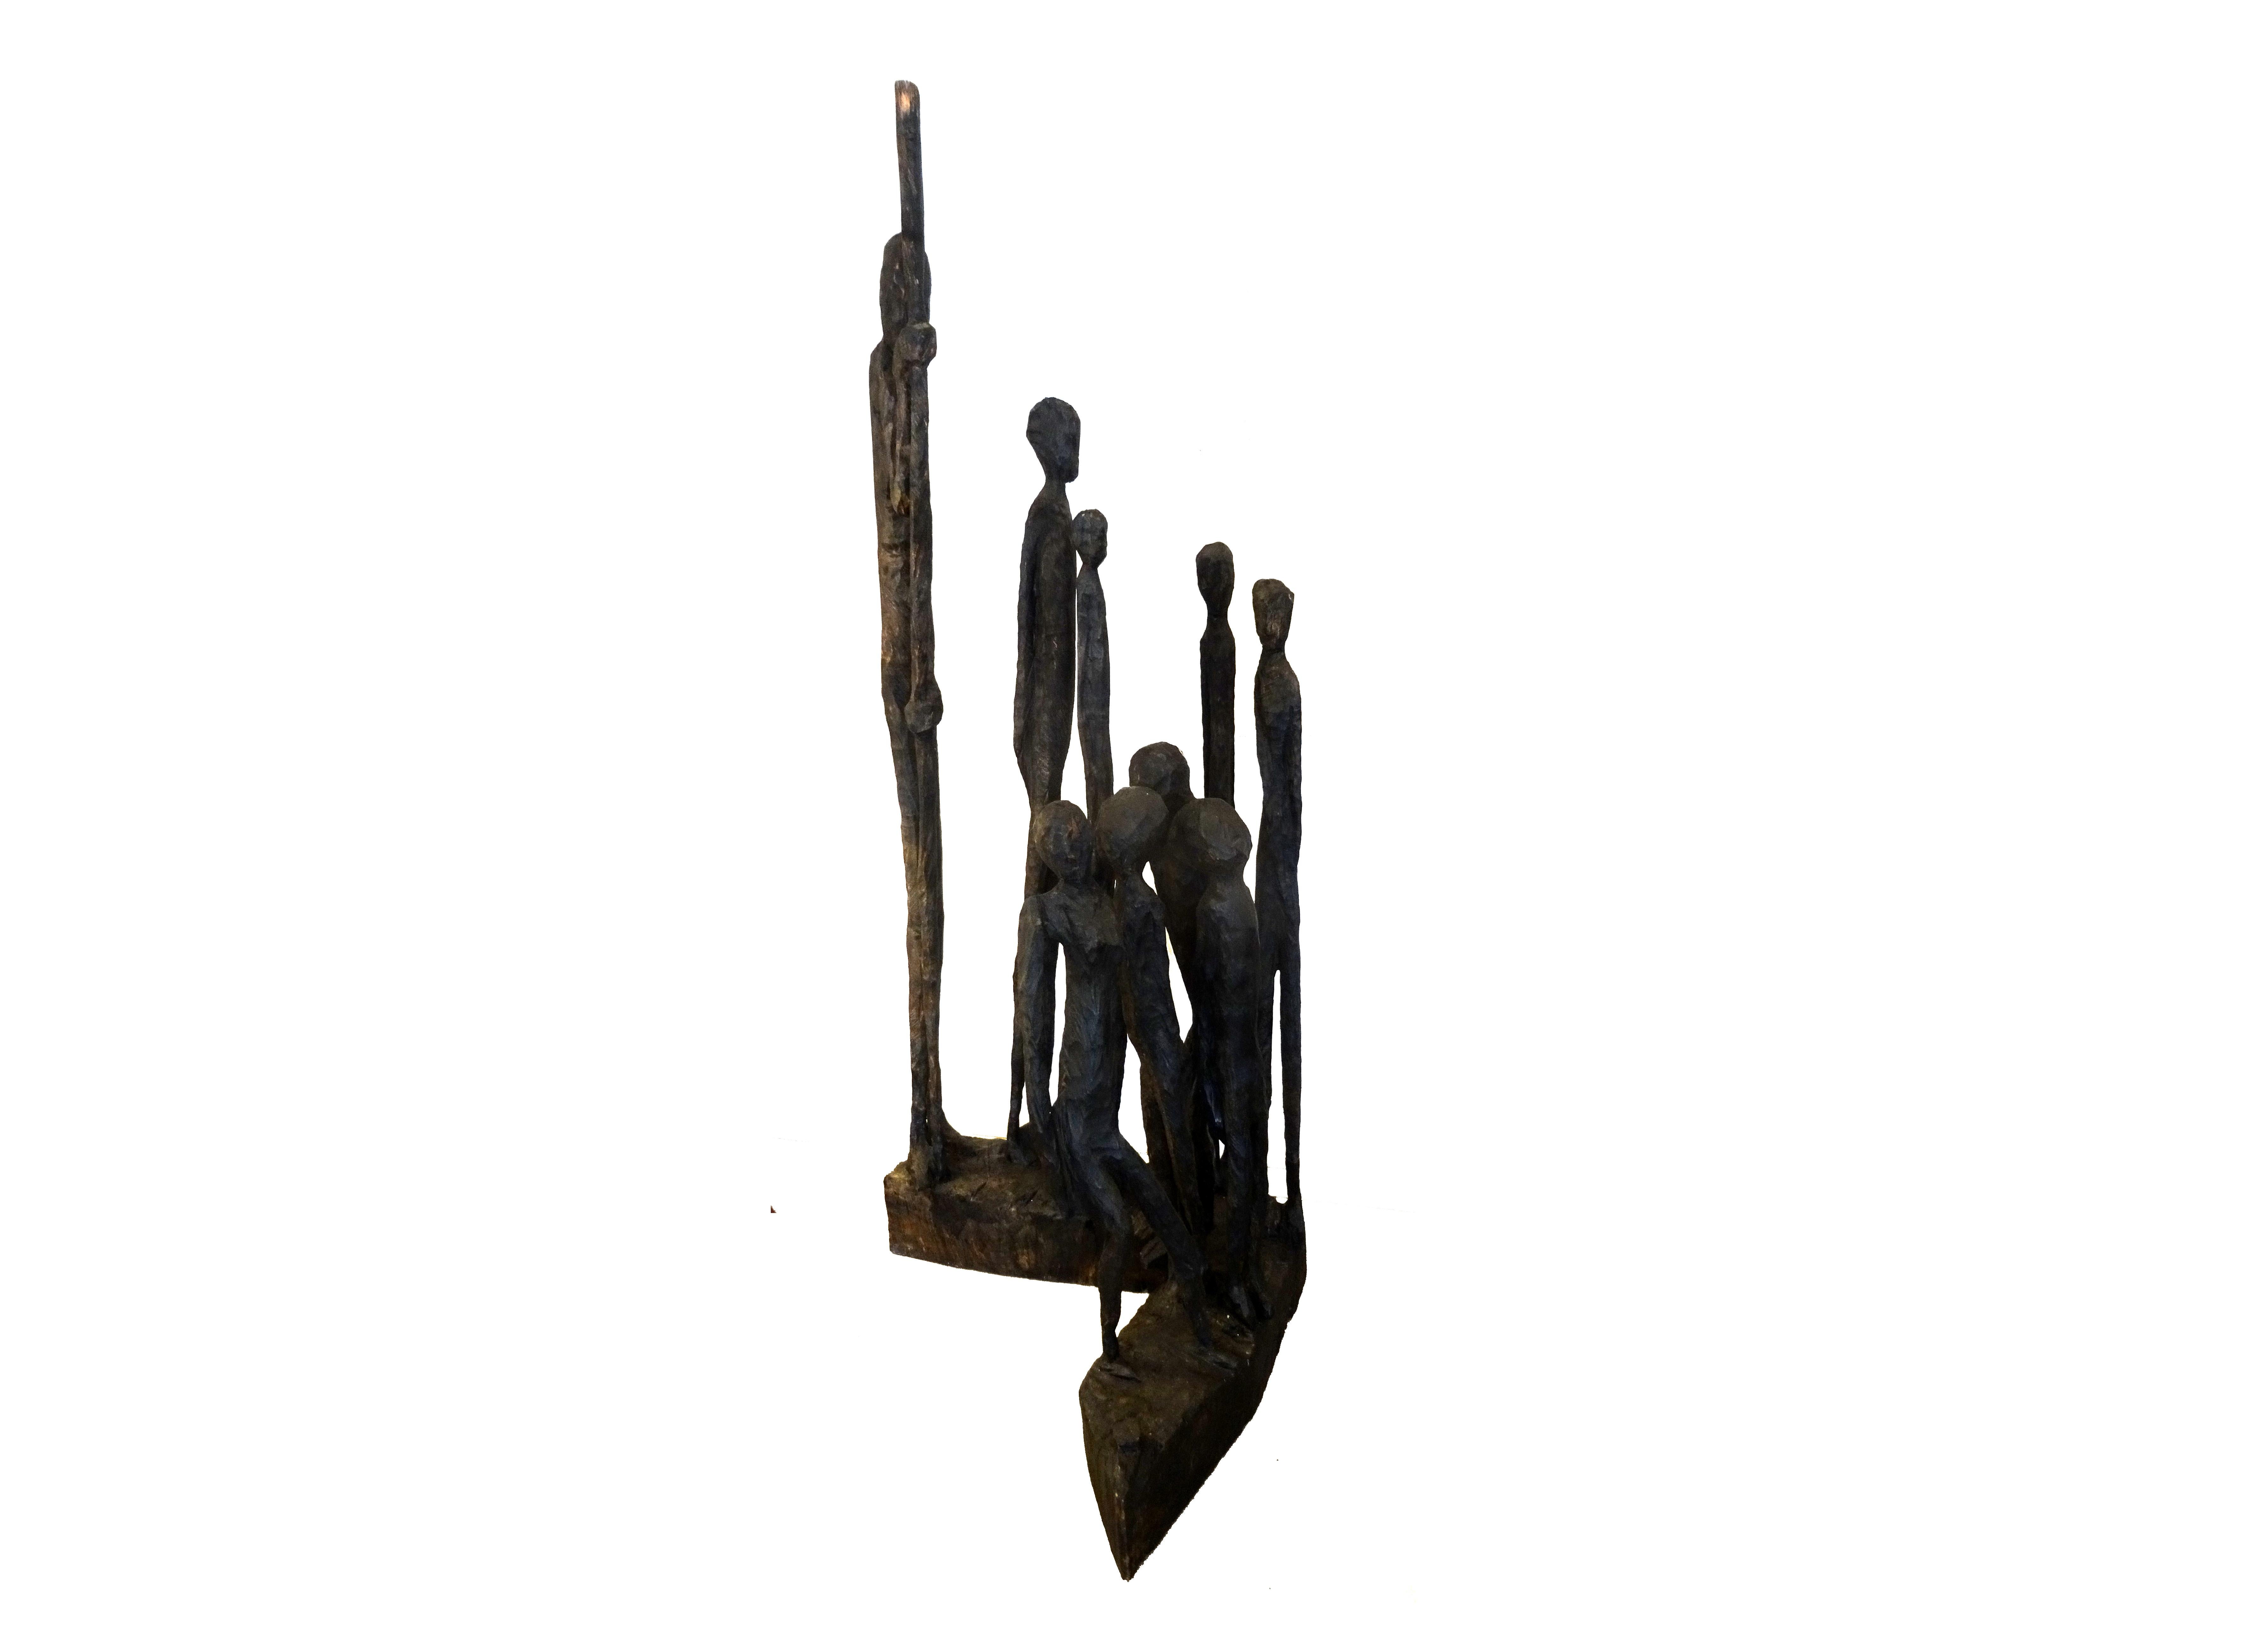 Skulptur, Holz, mit Feuer geschwärzt

Jems Robert Koko Bi, né en 1966 à Sinfra an der Elfenbeinküste, s'est rendu en Allemagne après ses études à Abidjan. Il a travaillé de 1992 à 1995 dans l'atelier de Klaus Simon et a été, jusqu'en 2000, maître de